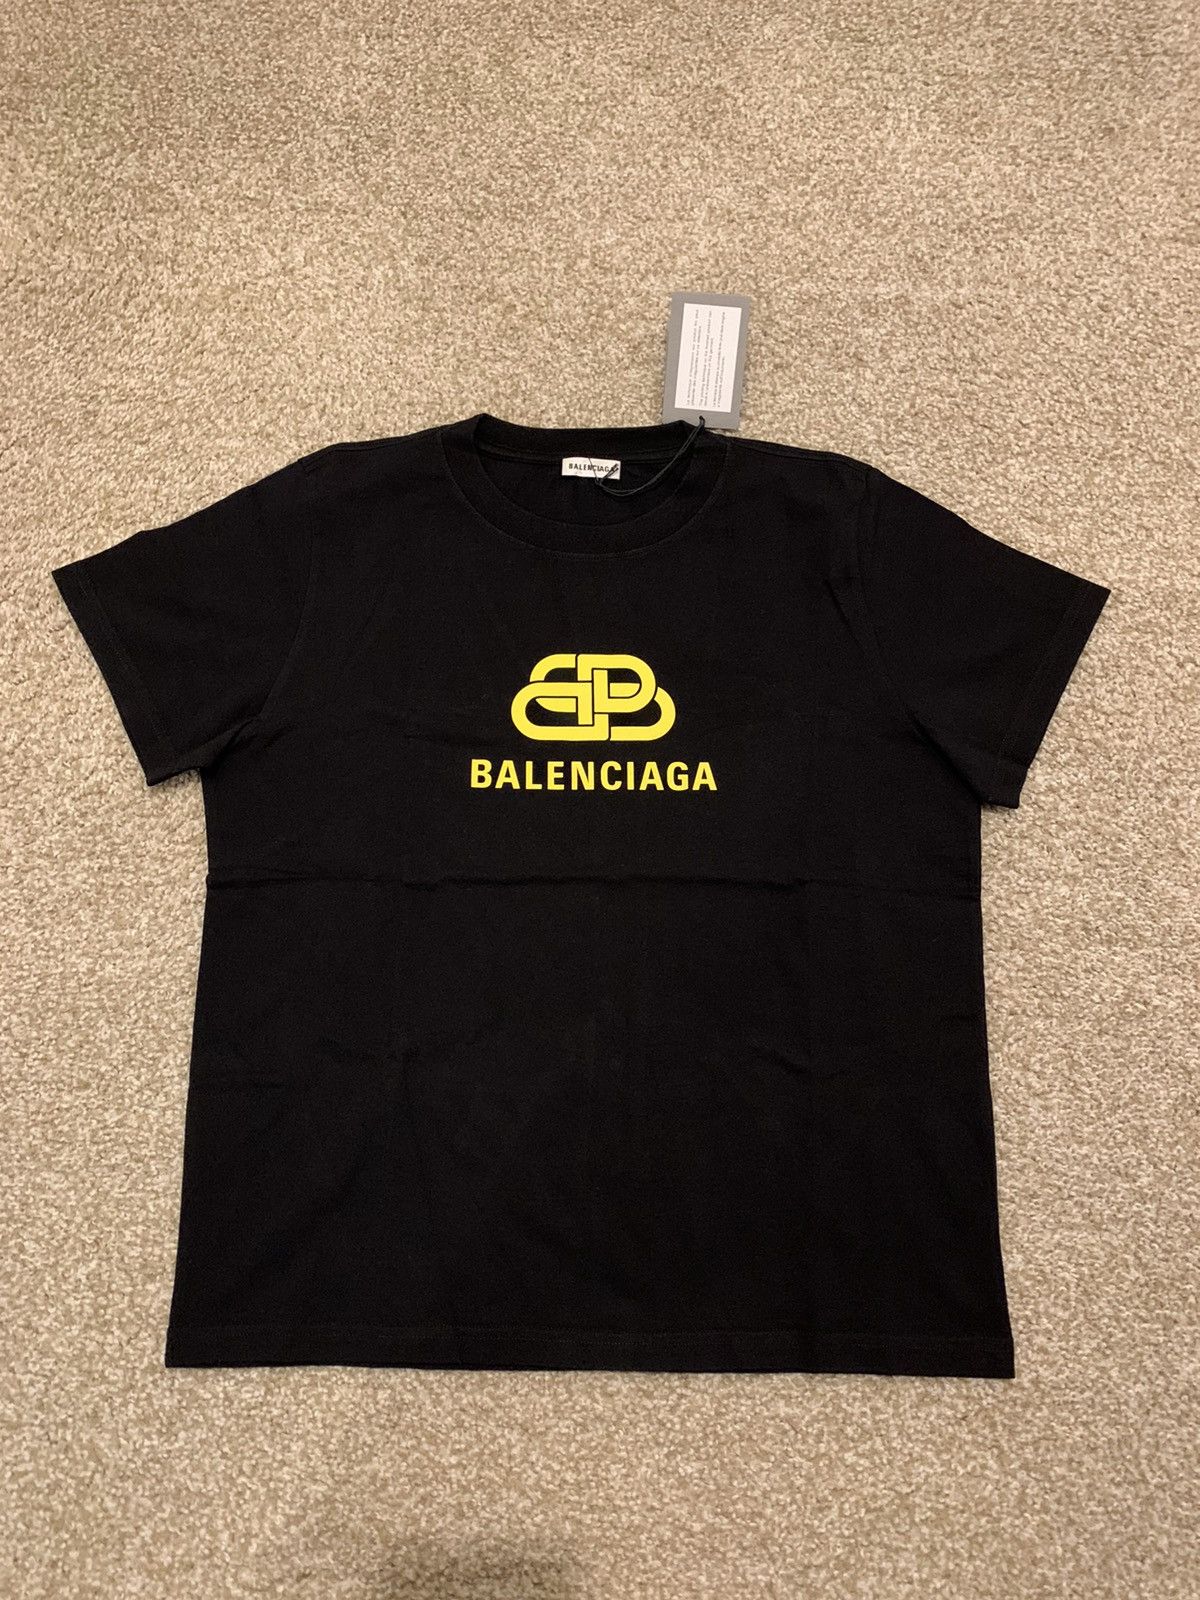 Balenciaga Balenciaga BB Logo Tee Black | Grailed